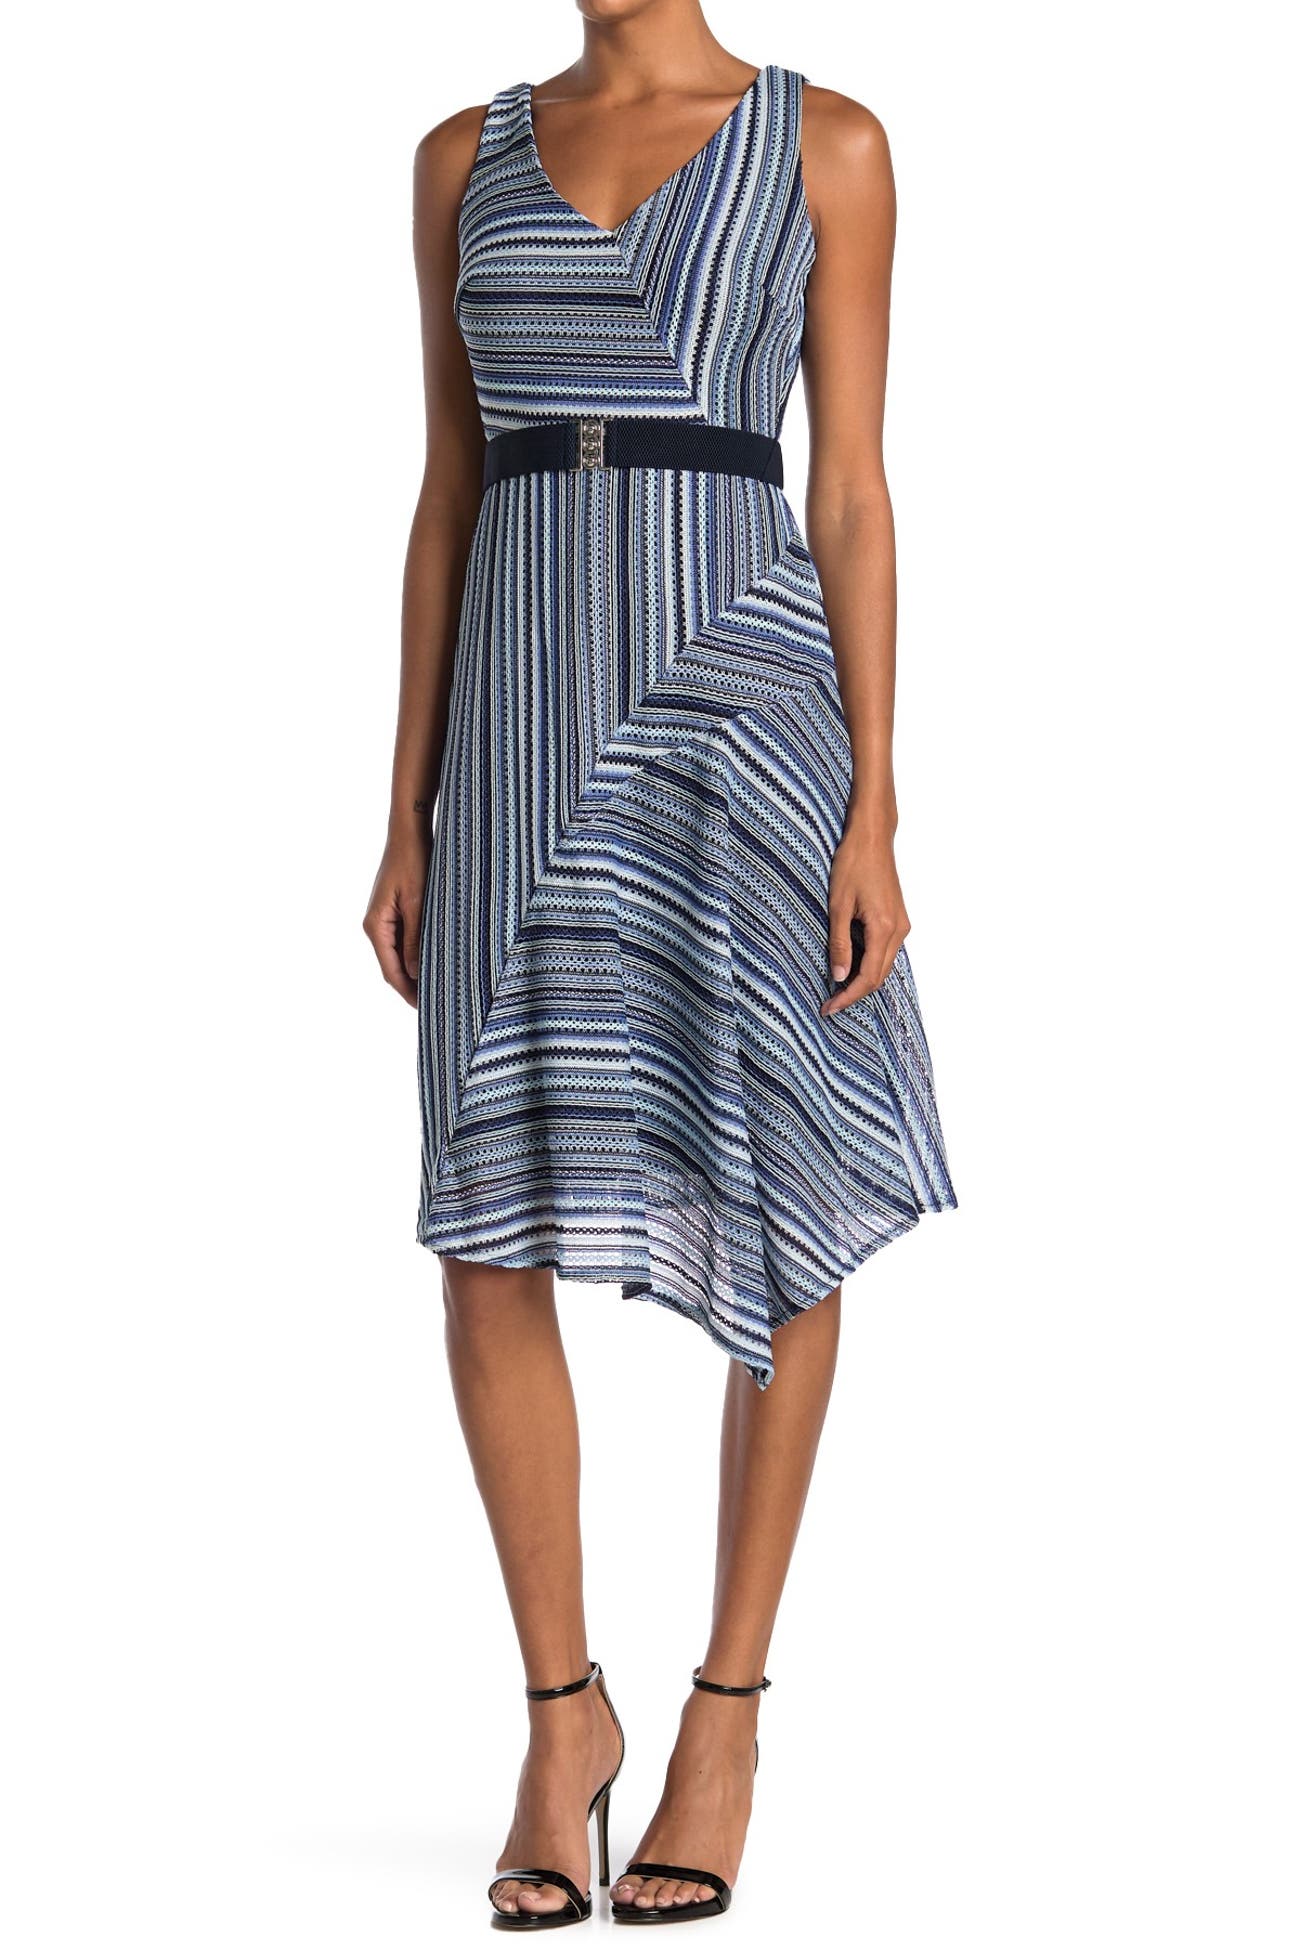 Gabby Skye | Striped Sleeveless Belted Midi Dress | Nordstrom Rack